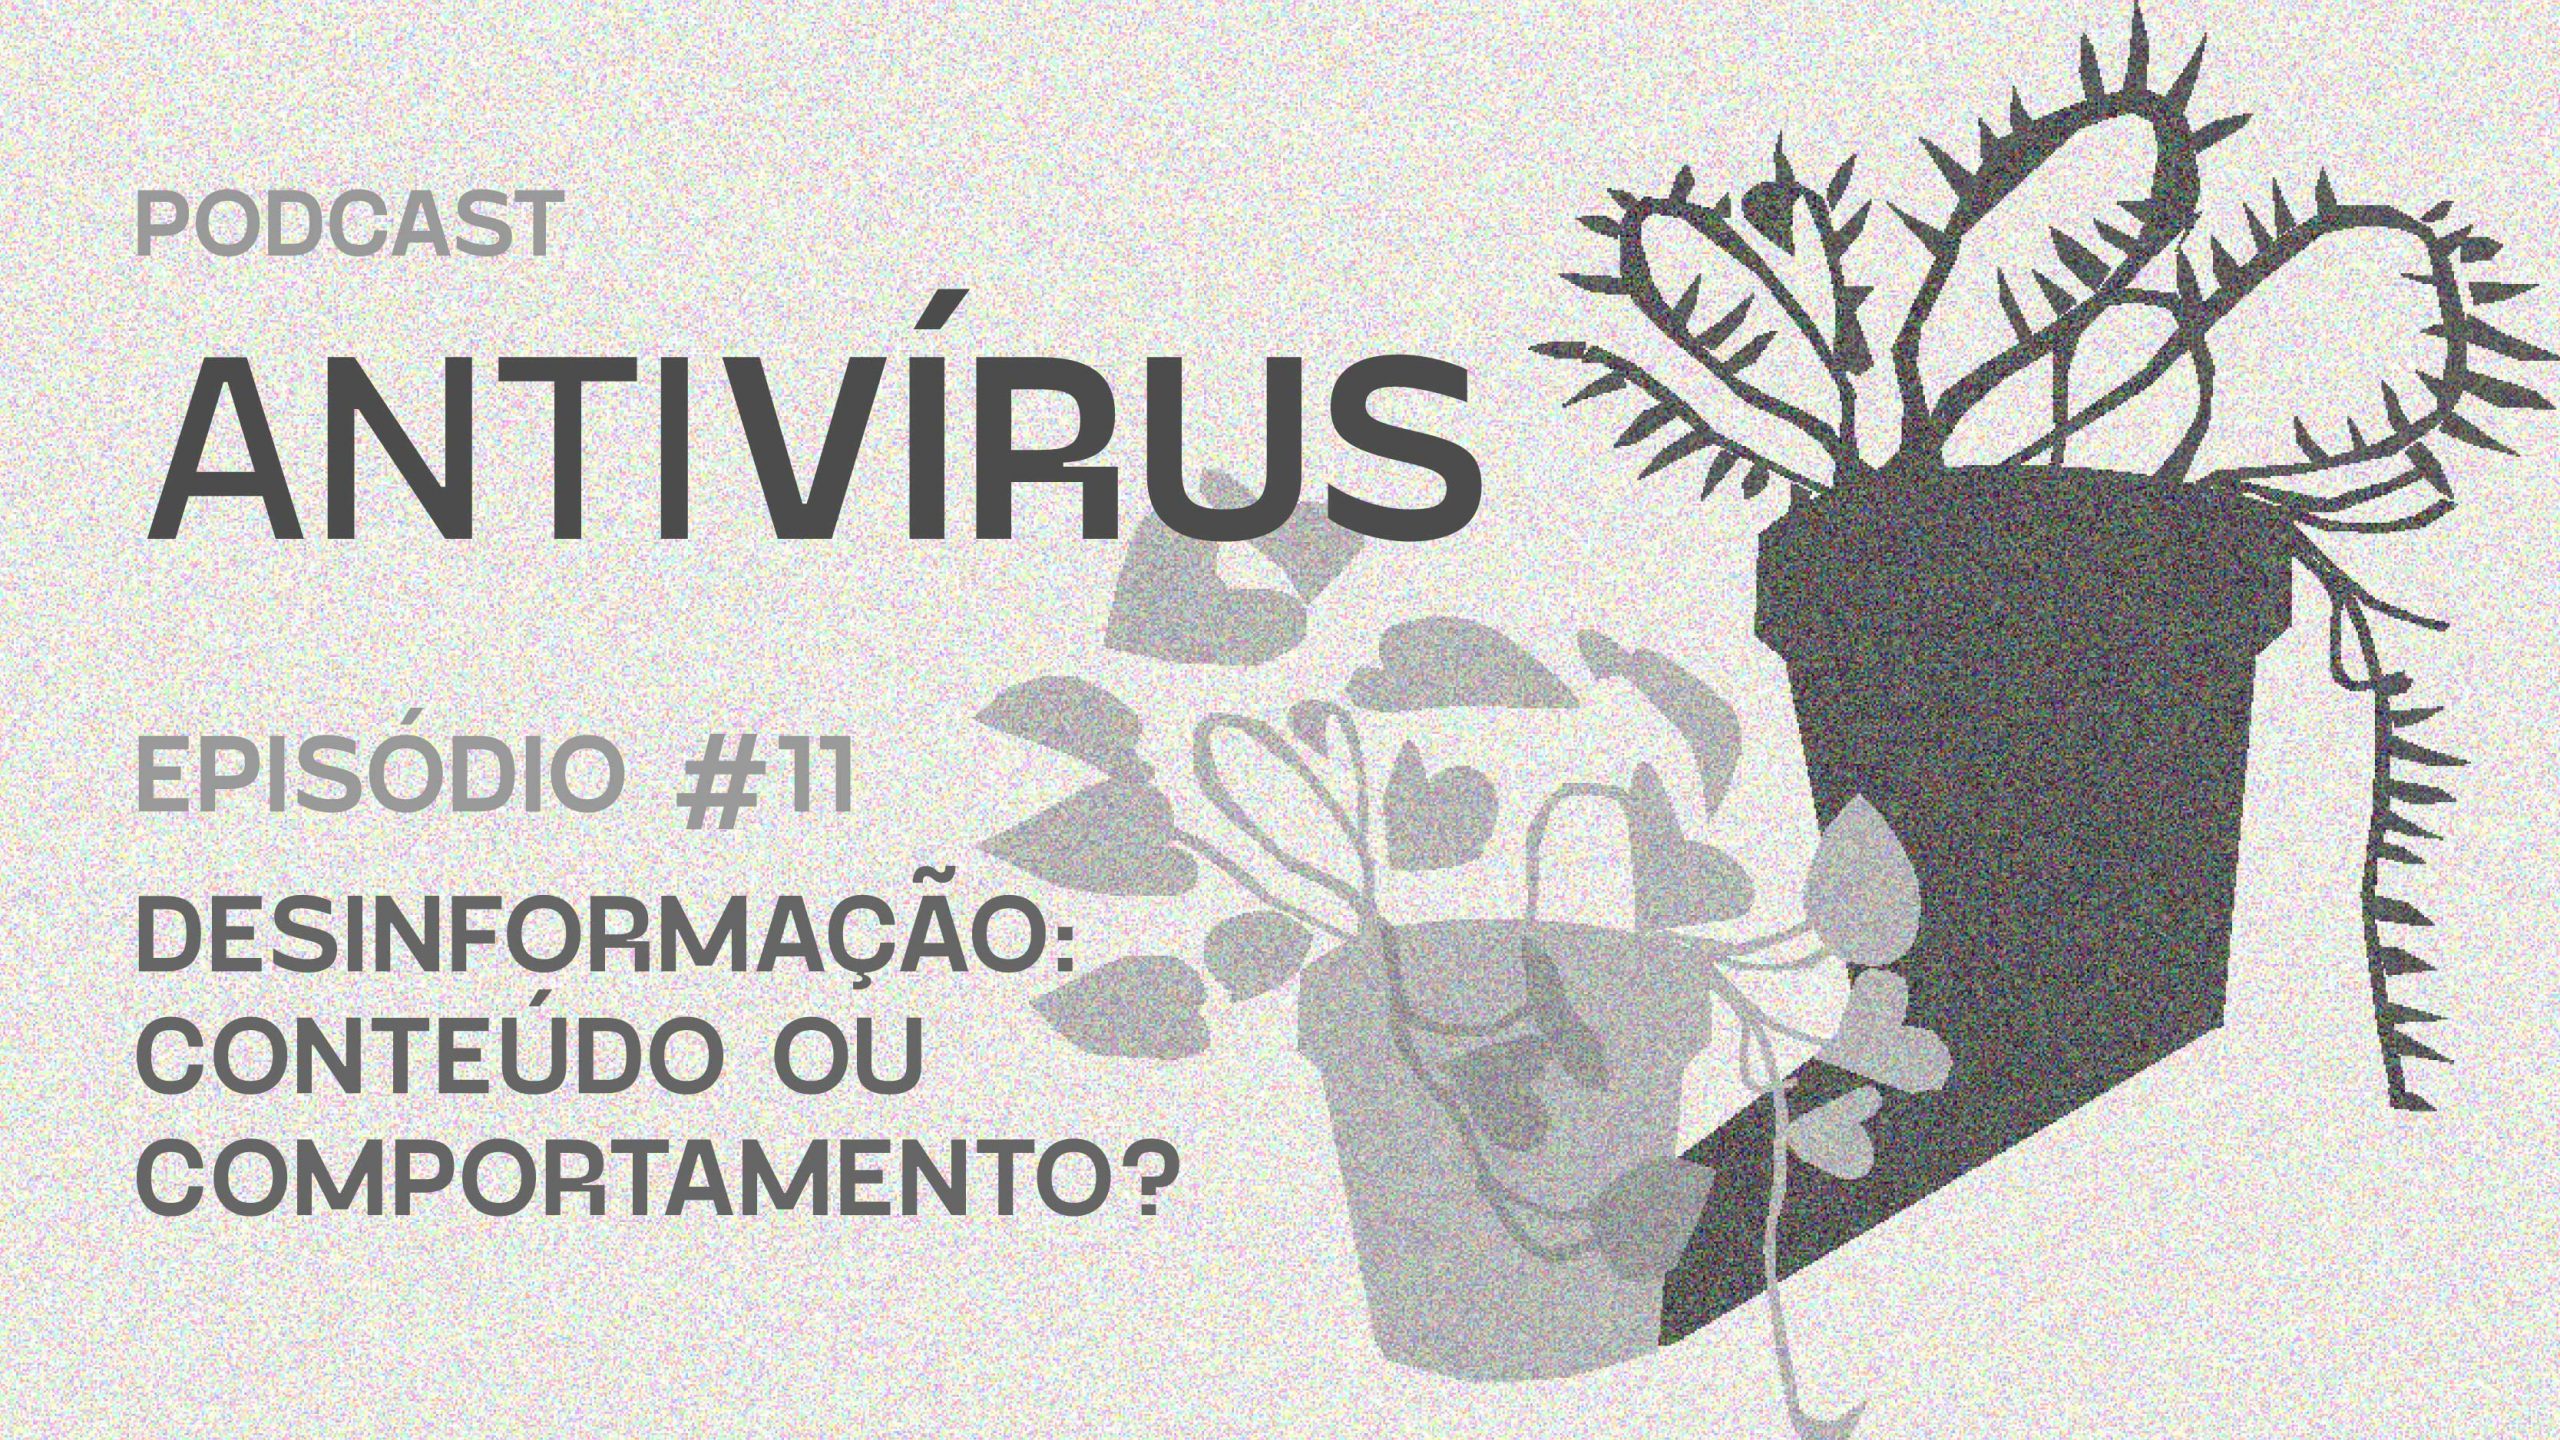 Capa do episódio 11 do Antivírus, intitulado "Desinformação: conteúdo ou comportamento?". Na imagem, em cinza há um vaso de planta.